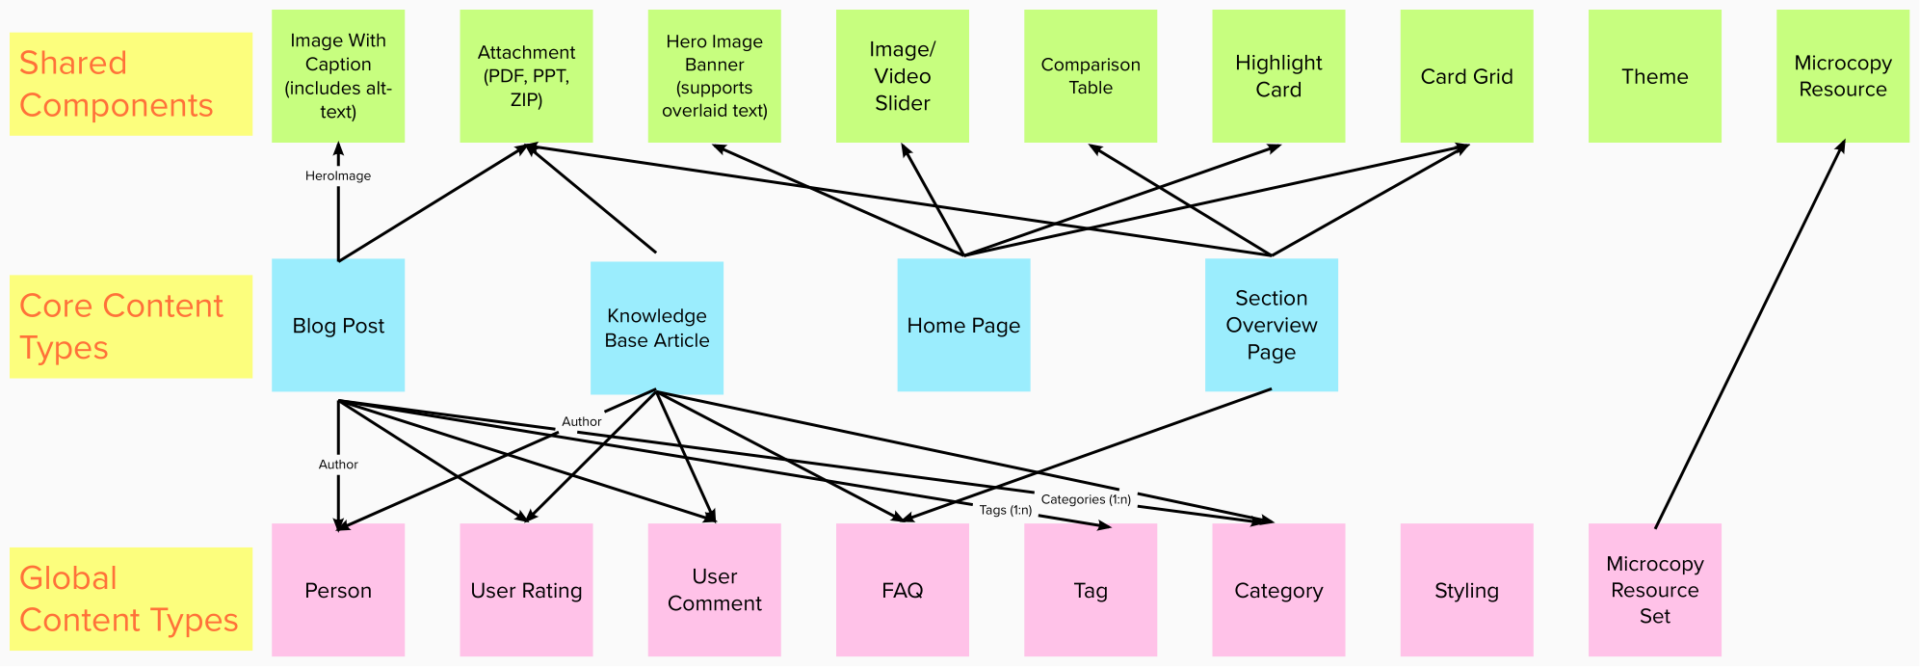 Sample Conceptual Content Model